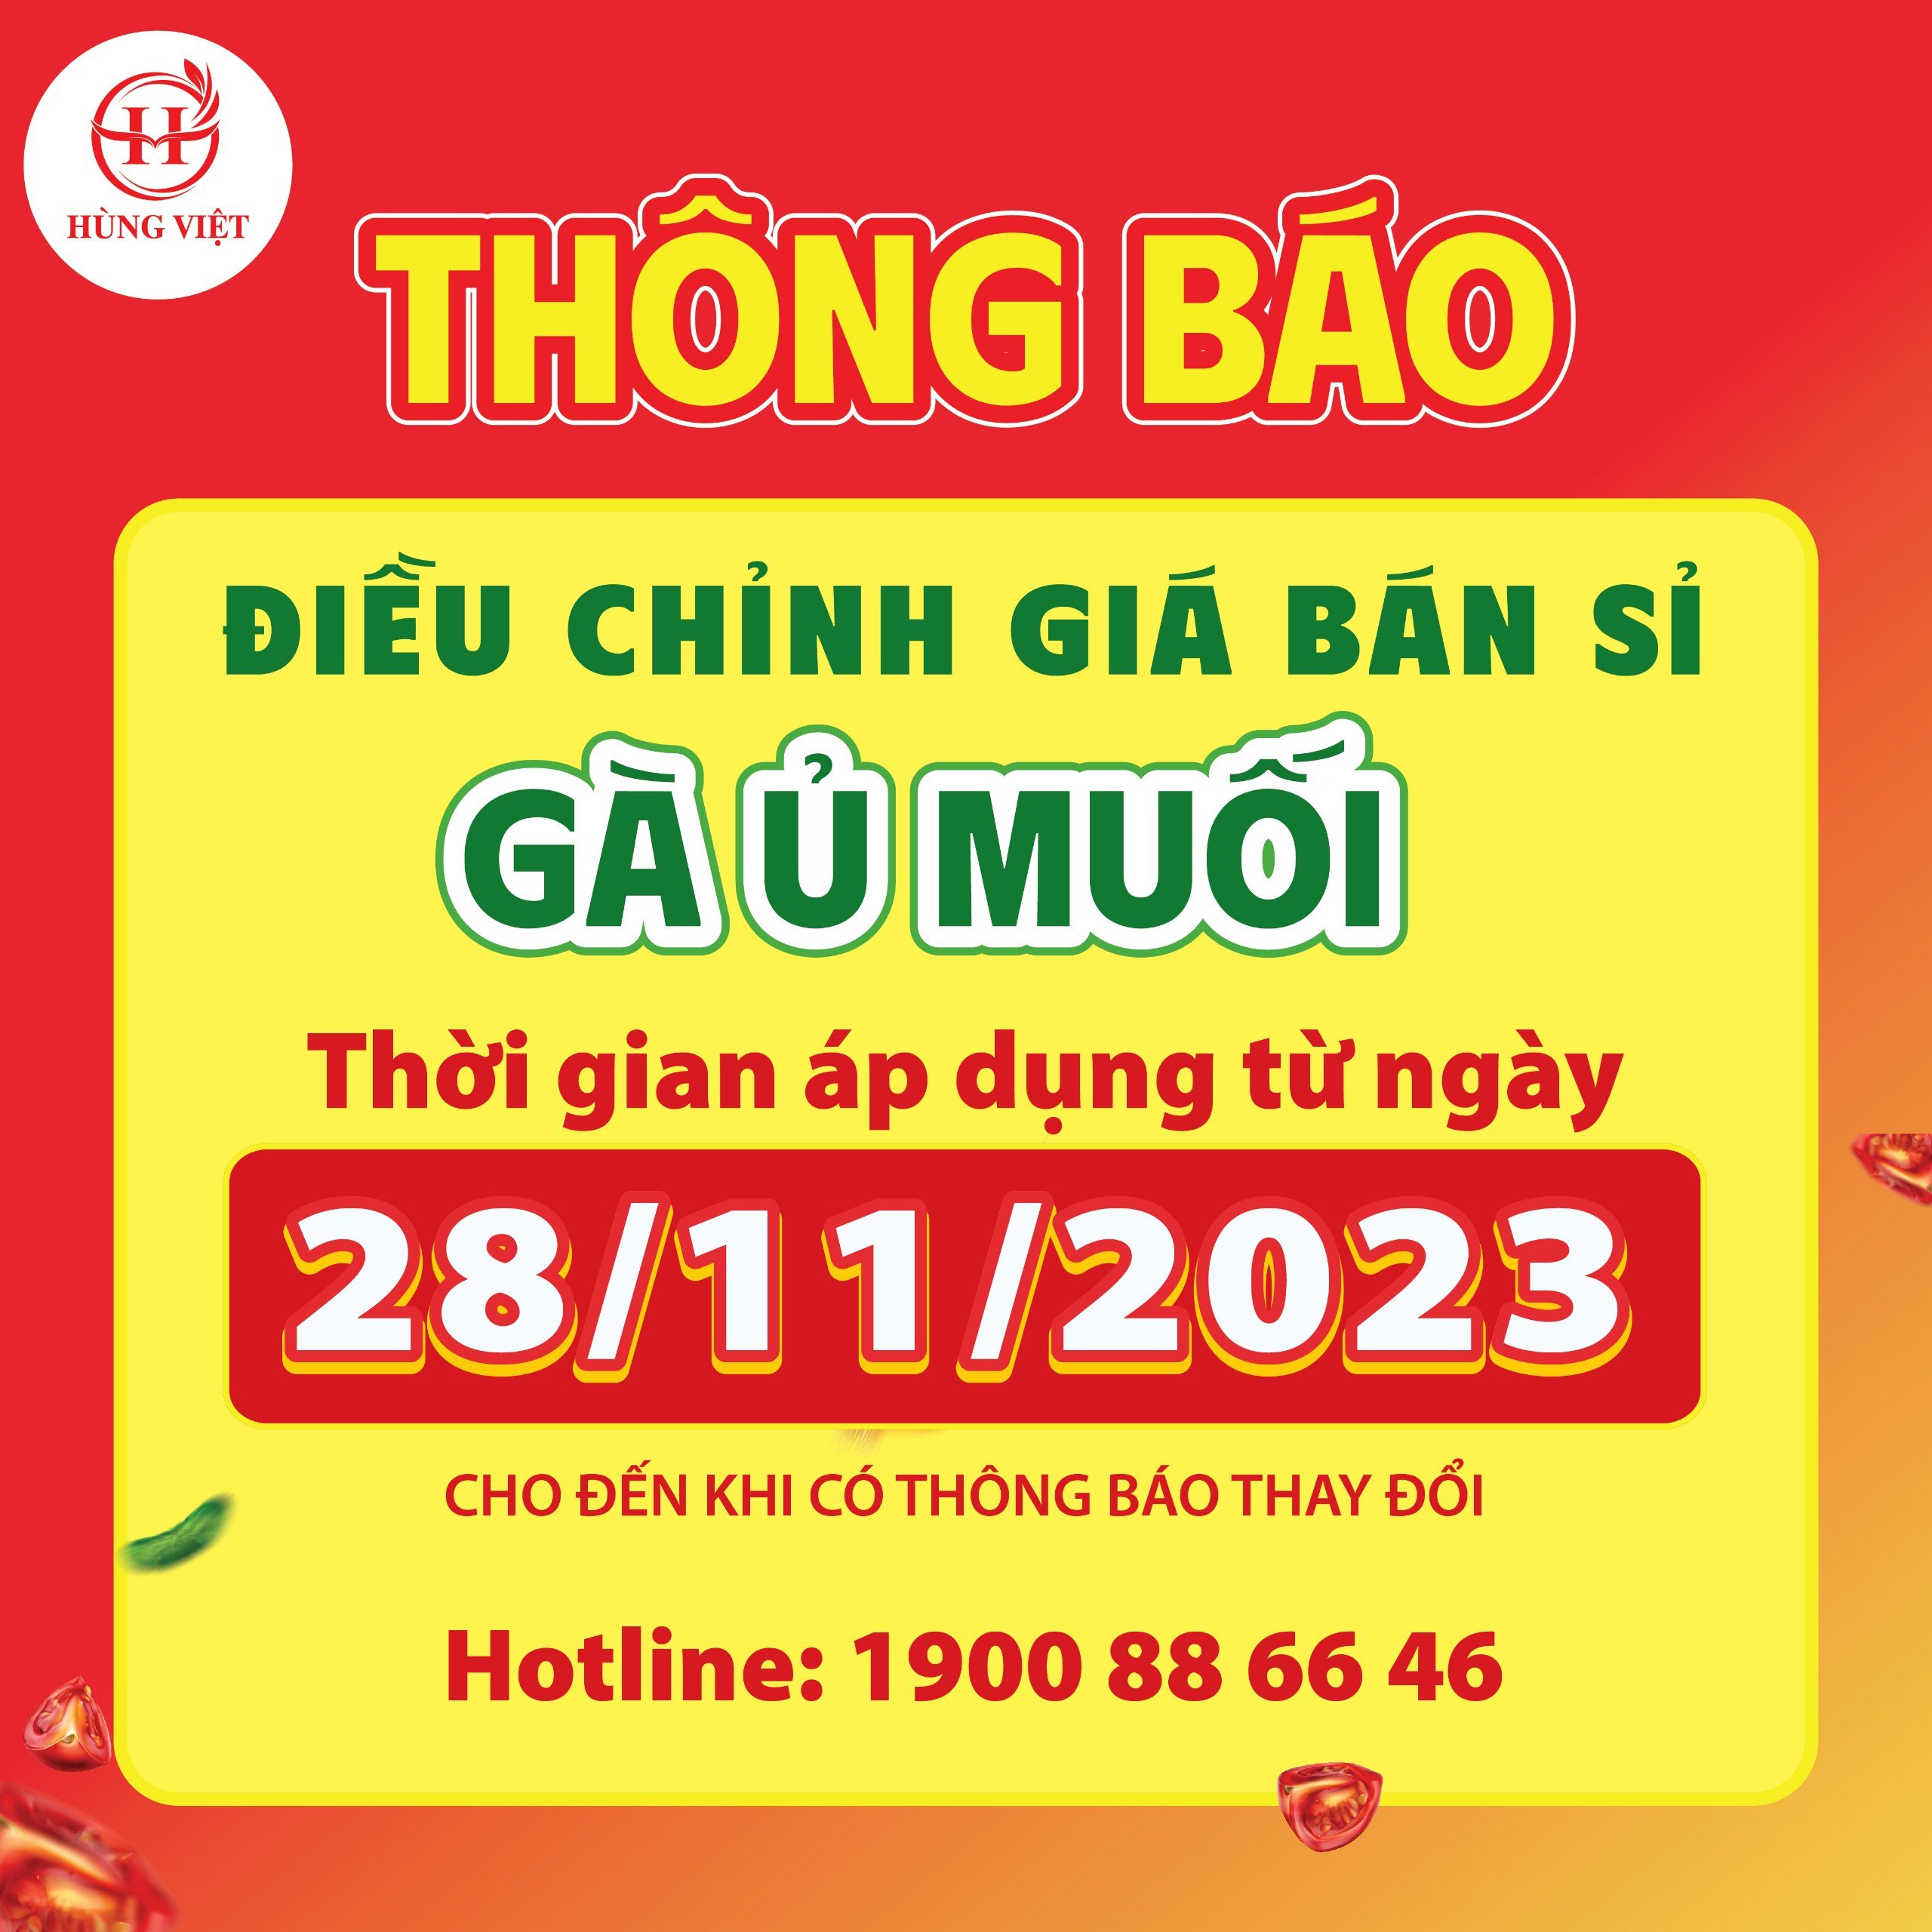 Thông báo điều chỉnh giá bán sỉ gà ủ muối hoa tiêu Hùng Việt